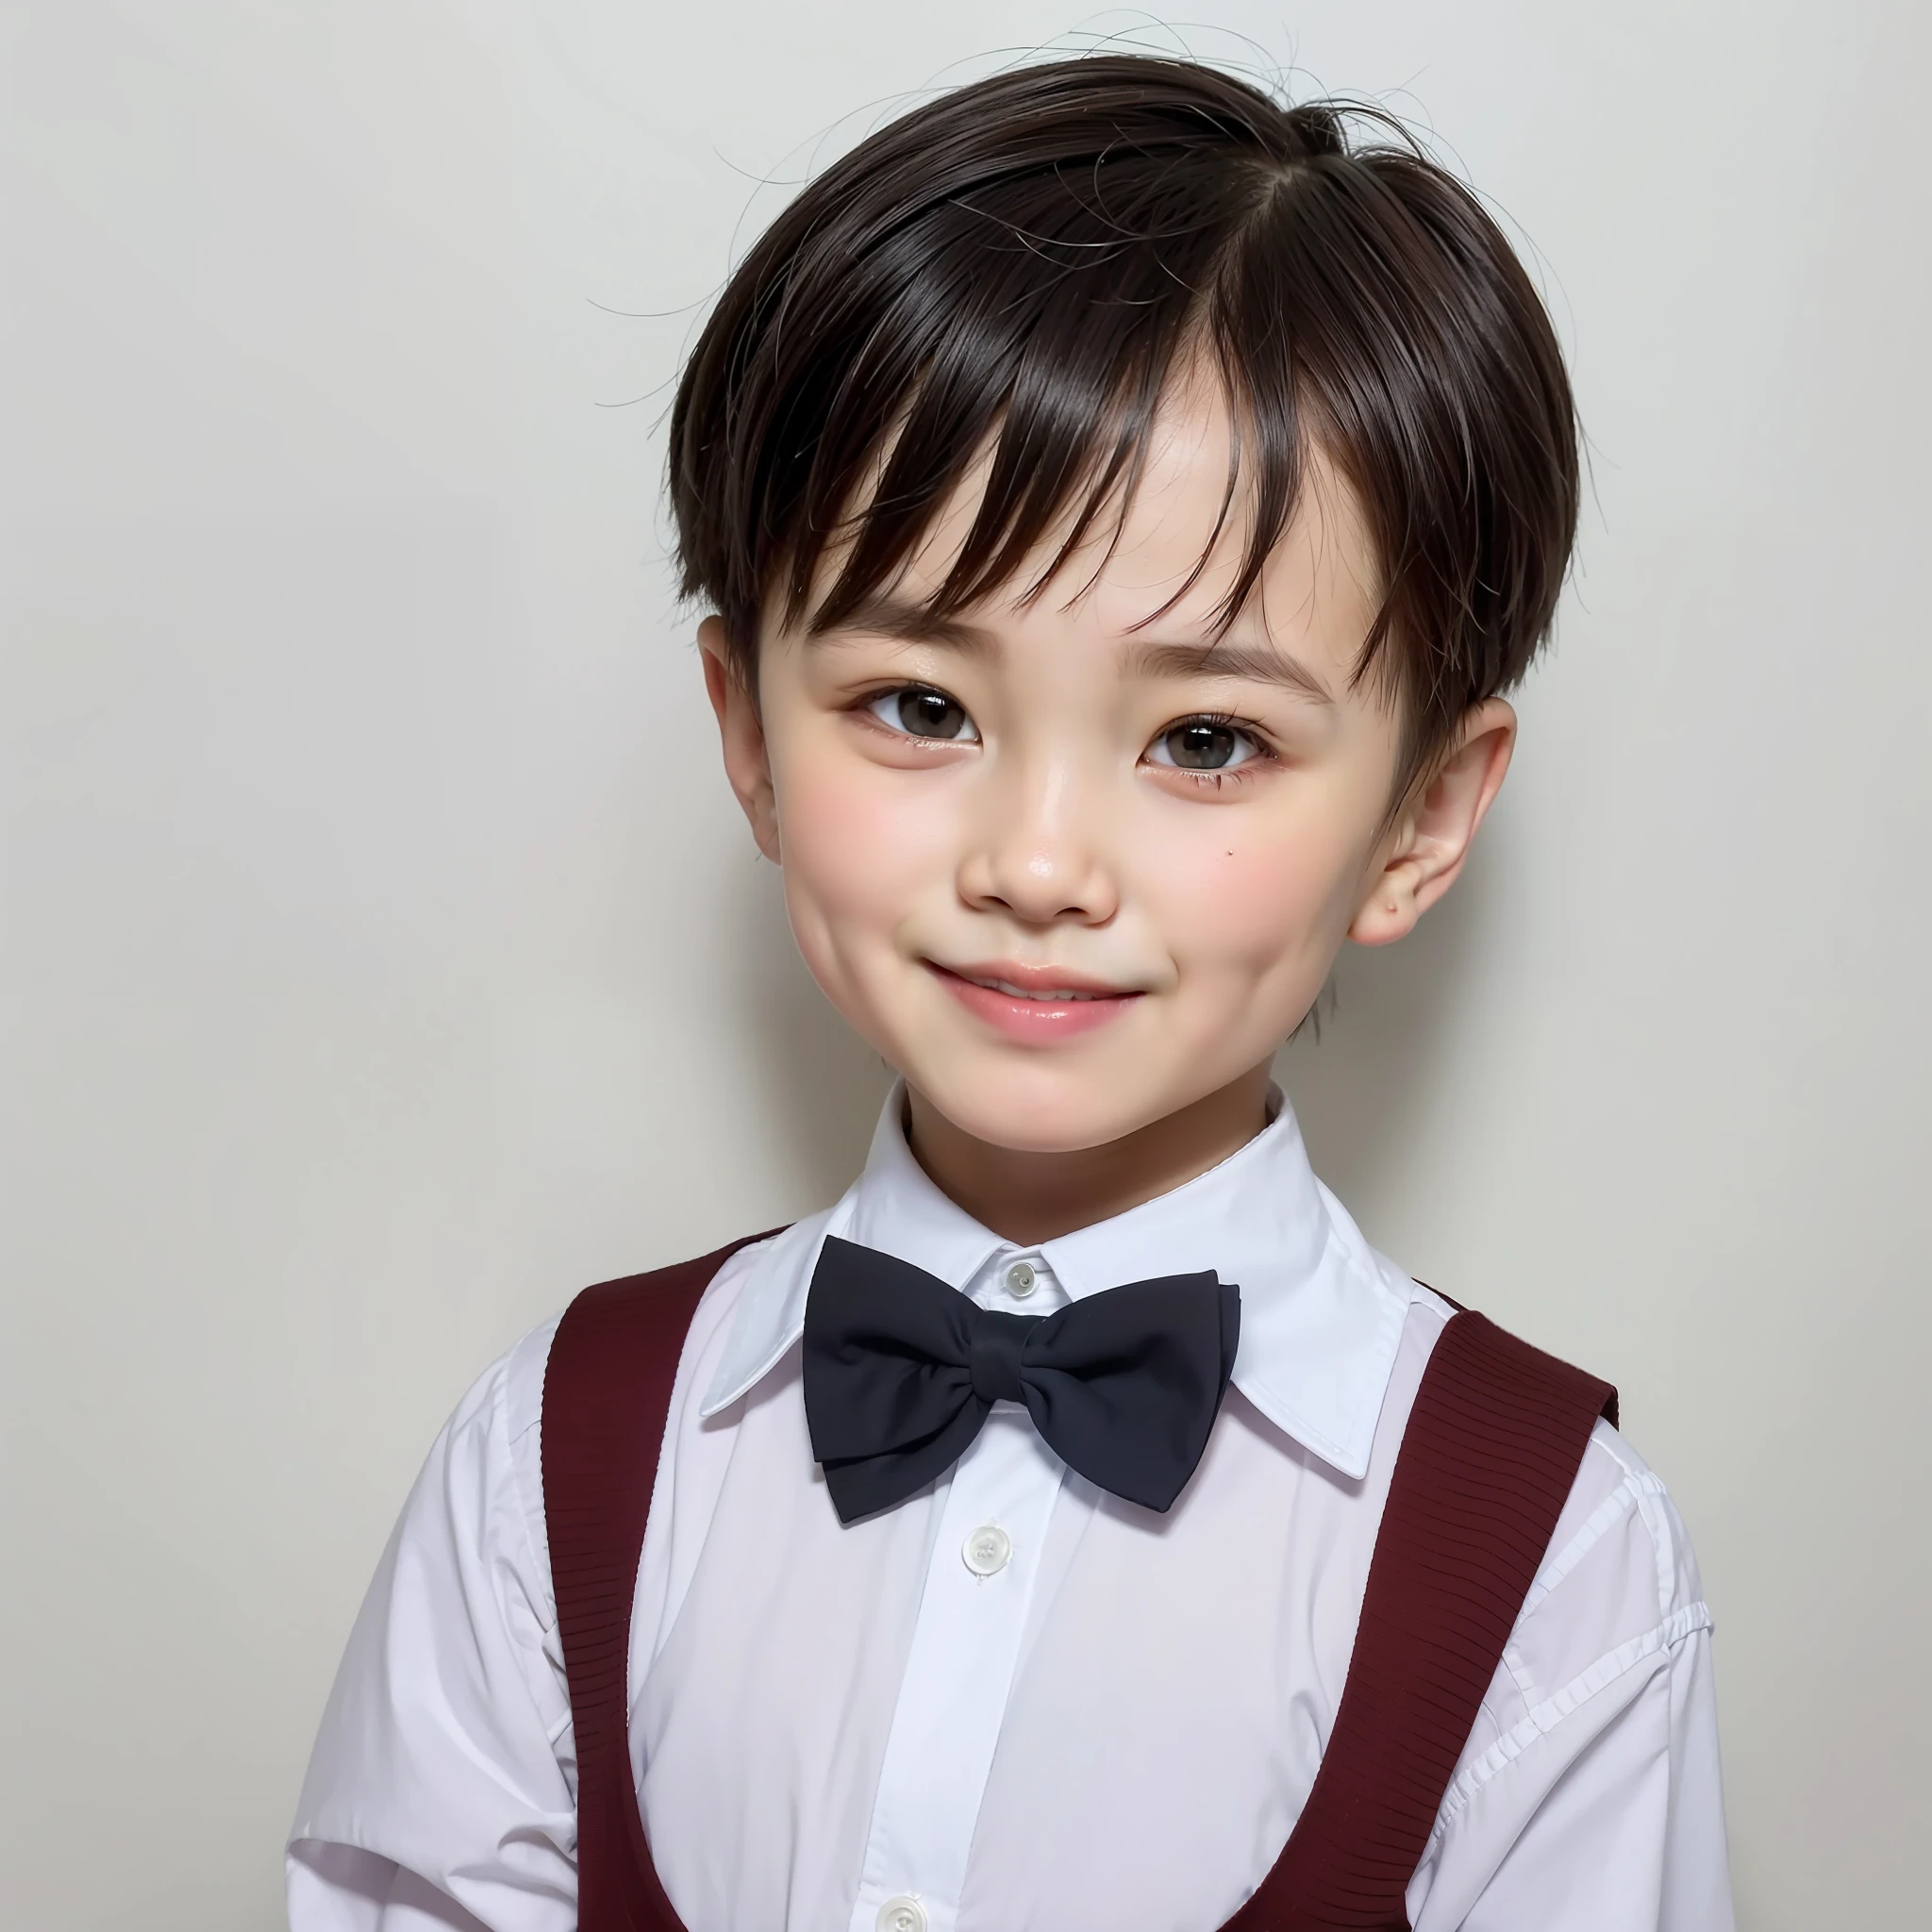 现代风格, 白色背景, 中国儿童证件照, 英俊的, 微笑的男孩, 黑眼睛, 平头, 领结